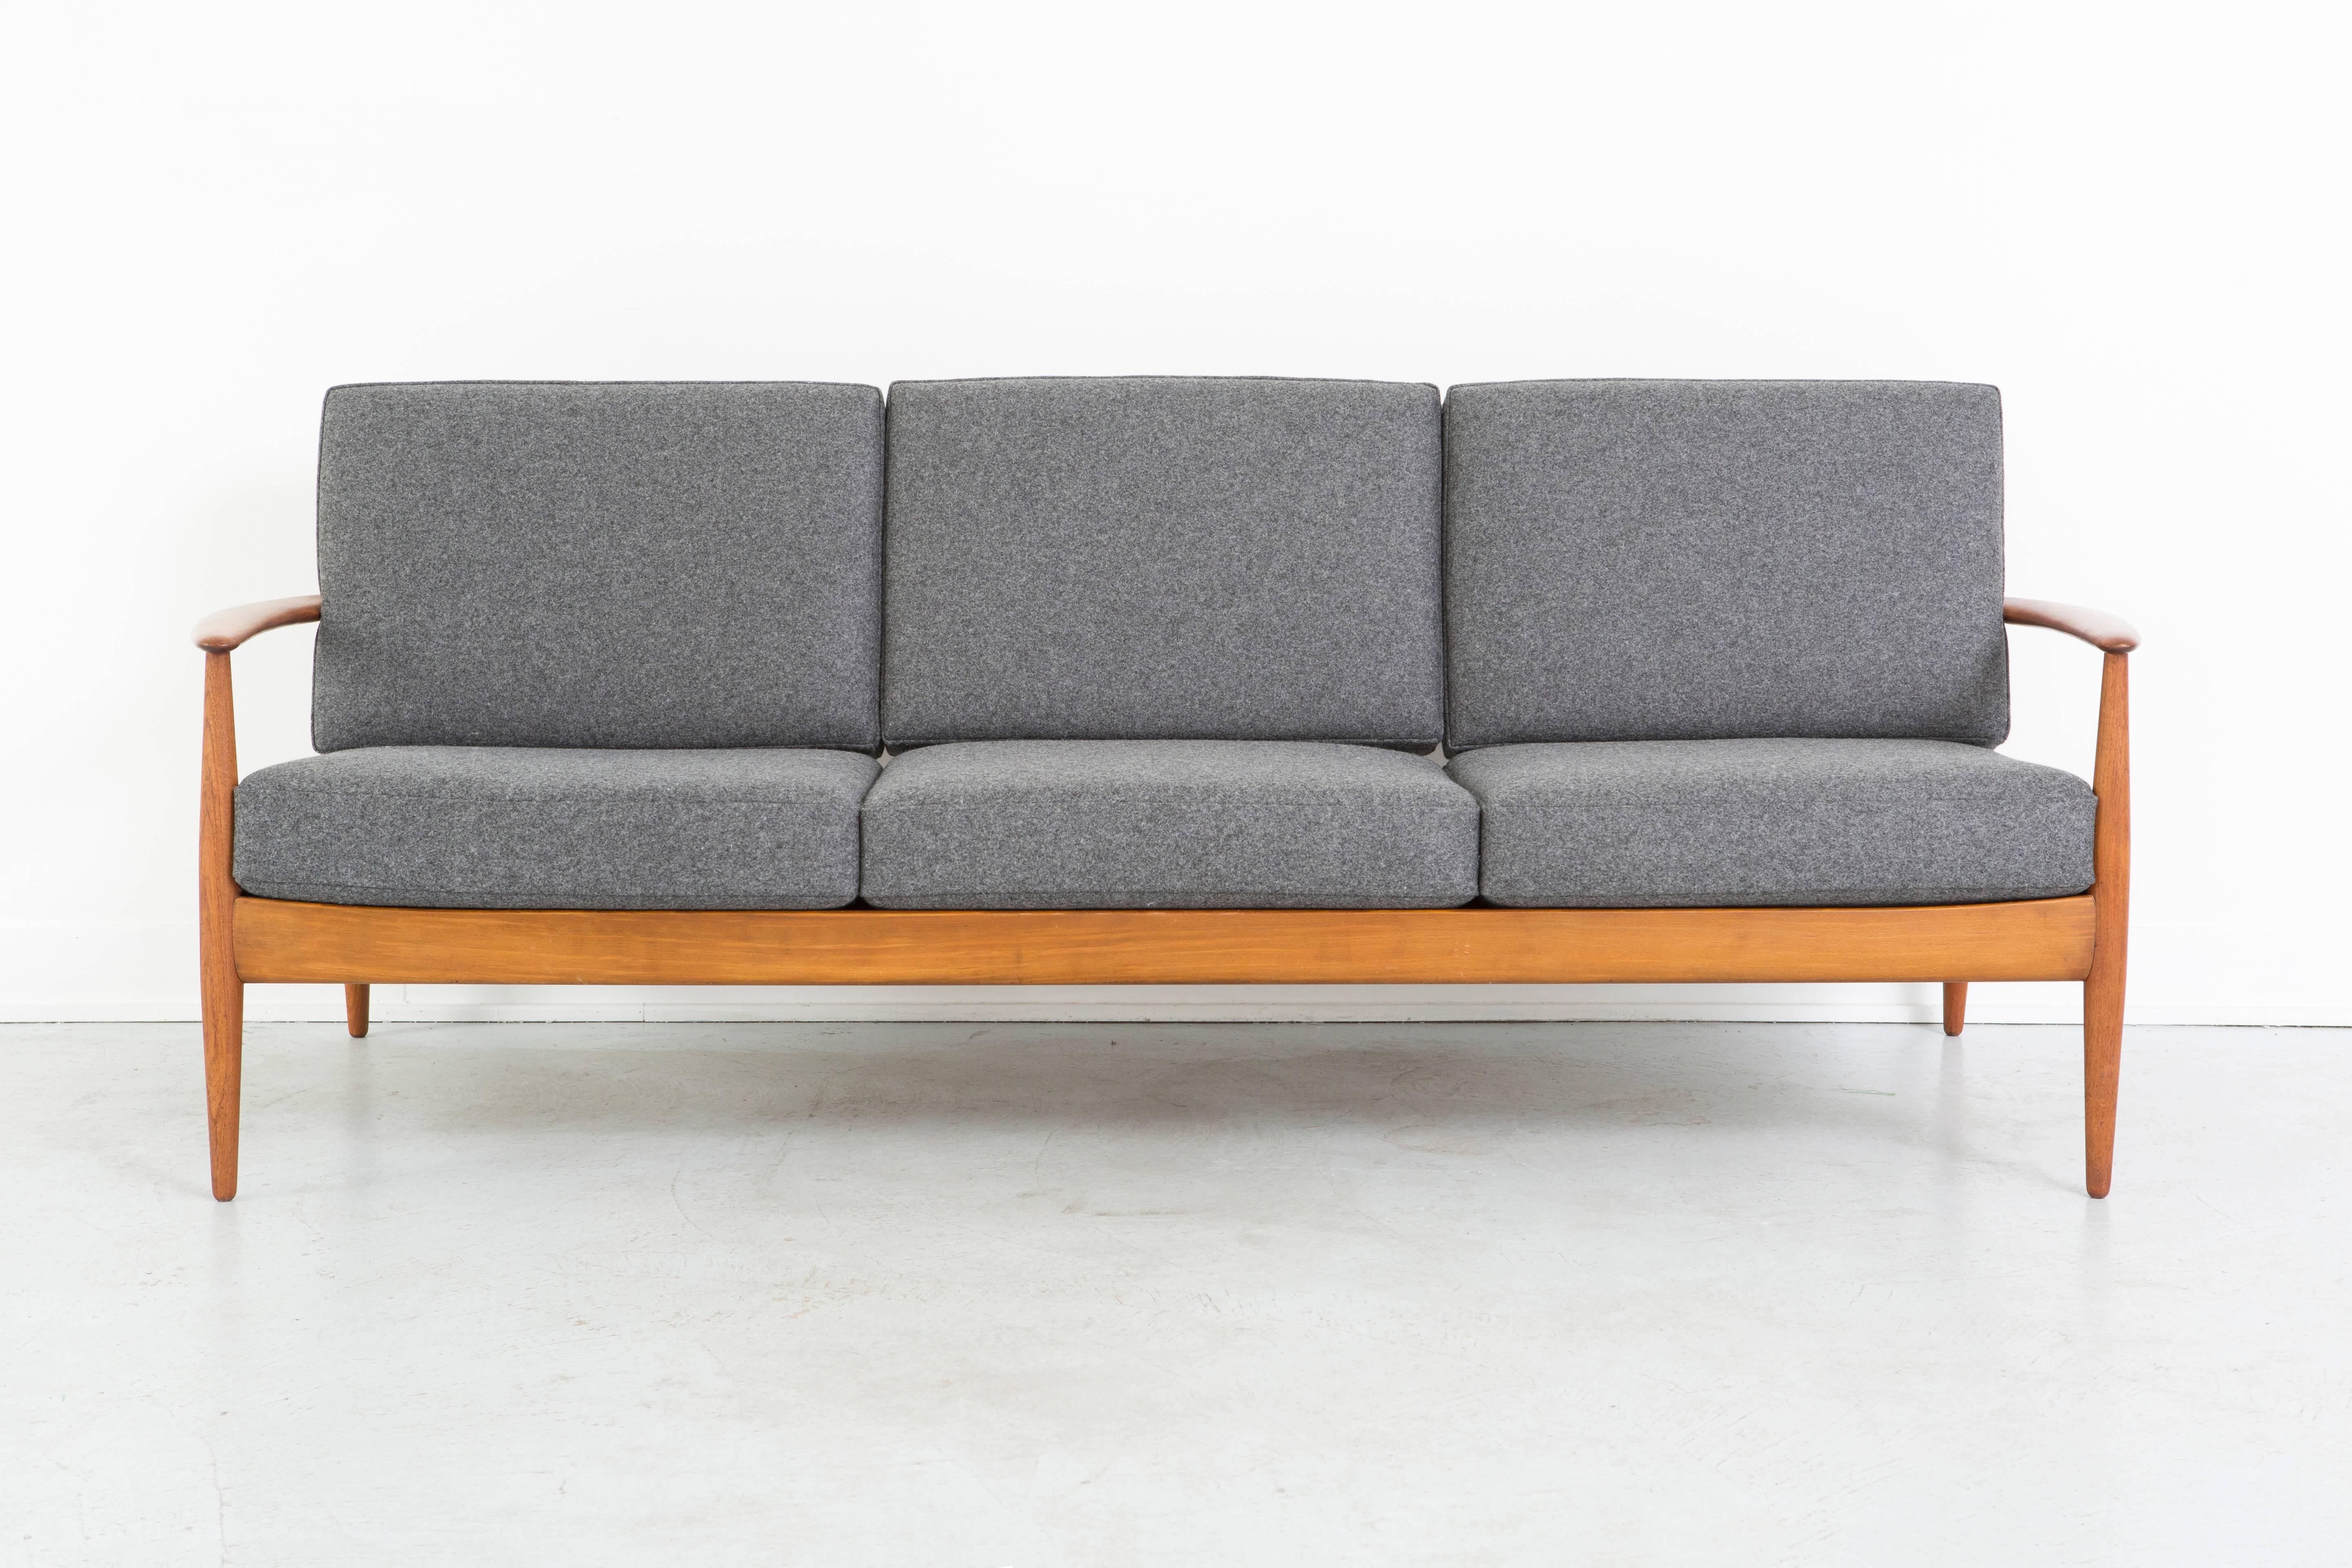 Sofa

Designed by Grete Jalk for France + Daverkosen 

Denmark, c 1950s

Reupholstered in Marharam wool felt + teak wood

30